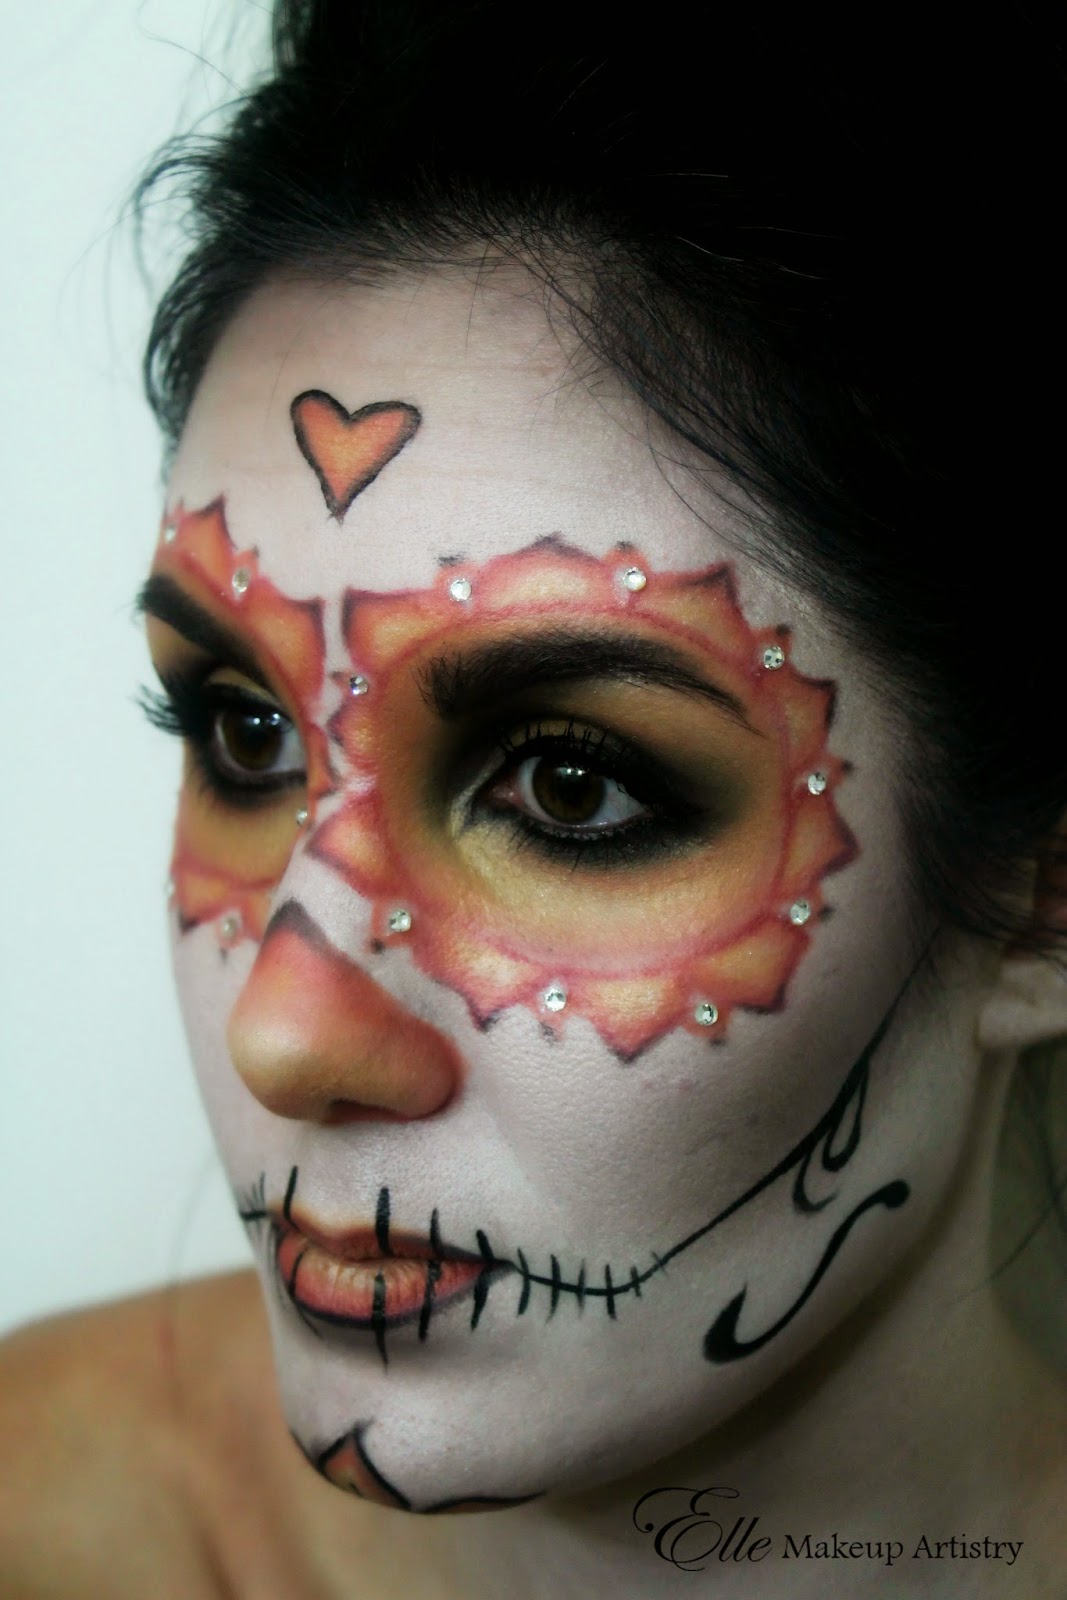 Elle Makeup Artist: Halloween Makeup - Dia de los Muertos - Day of the ...